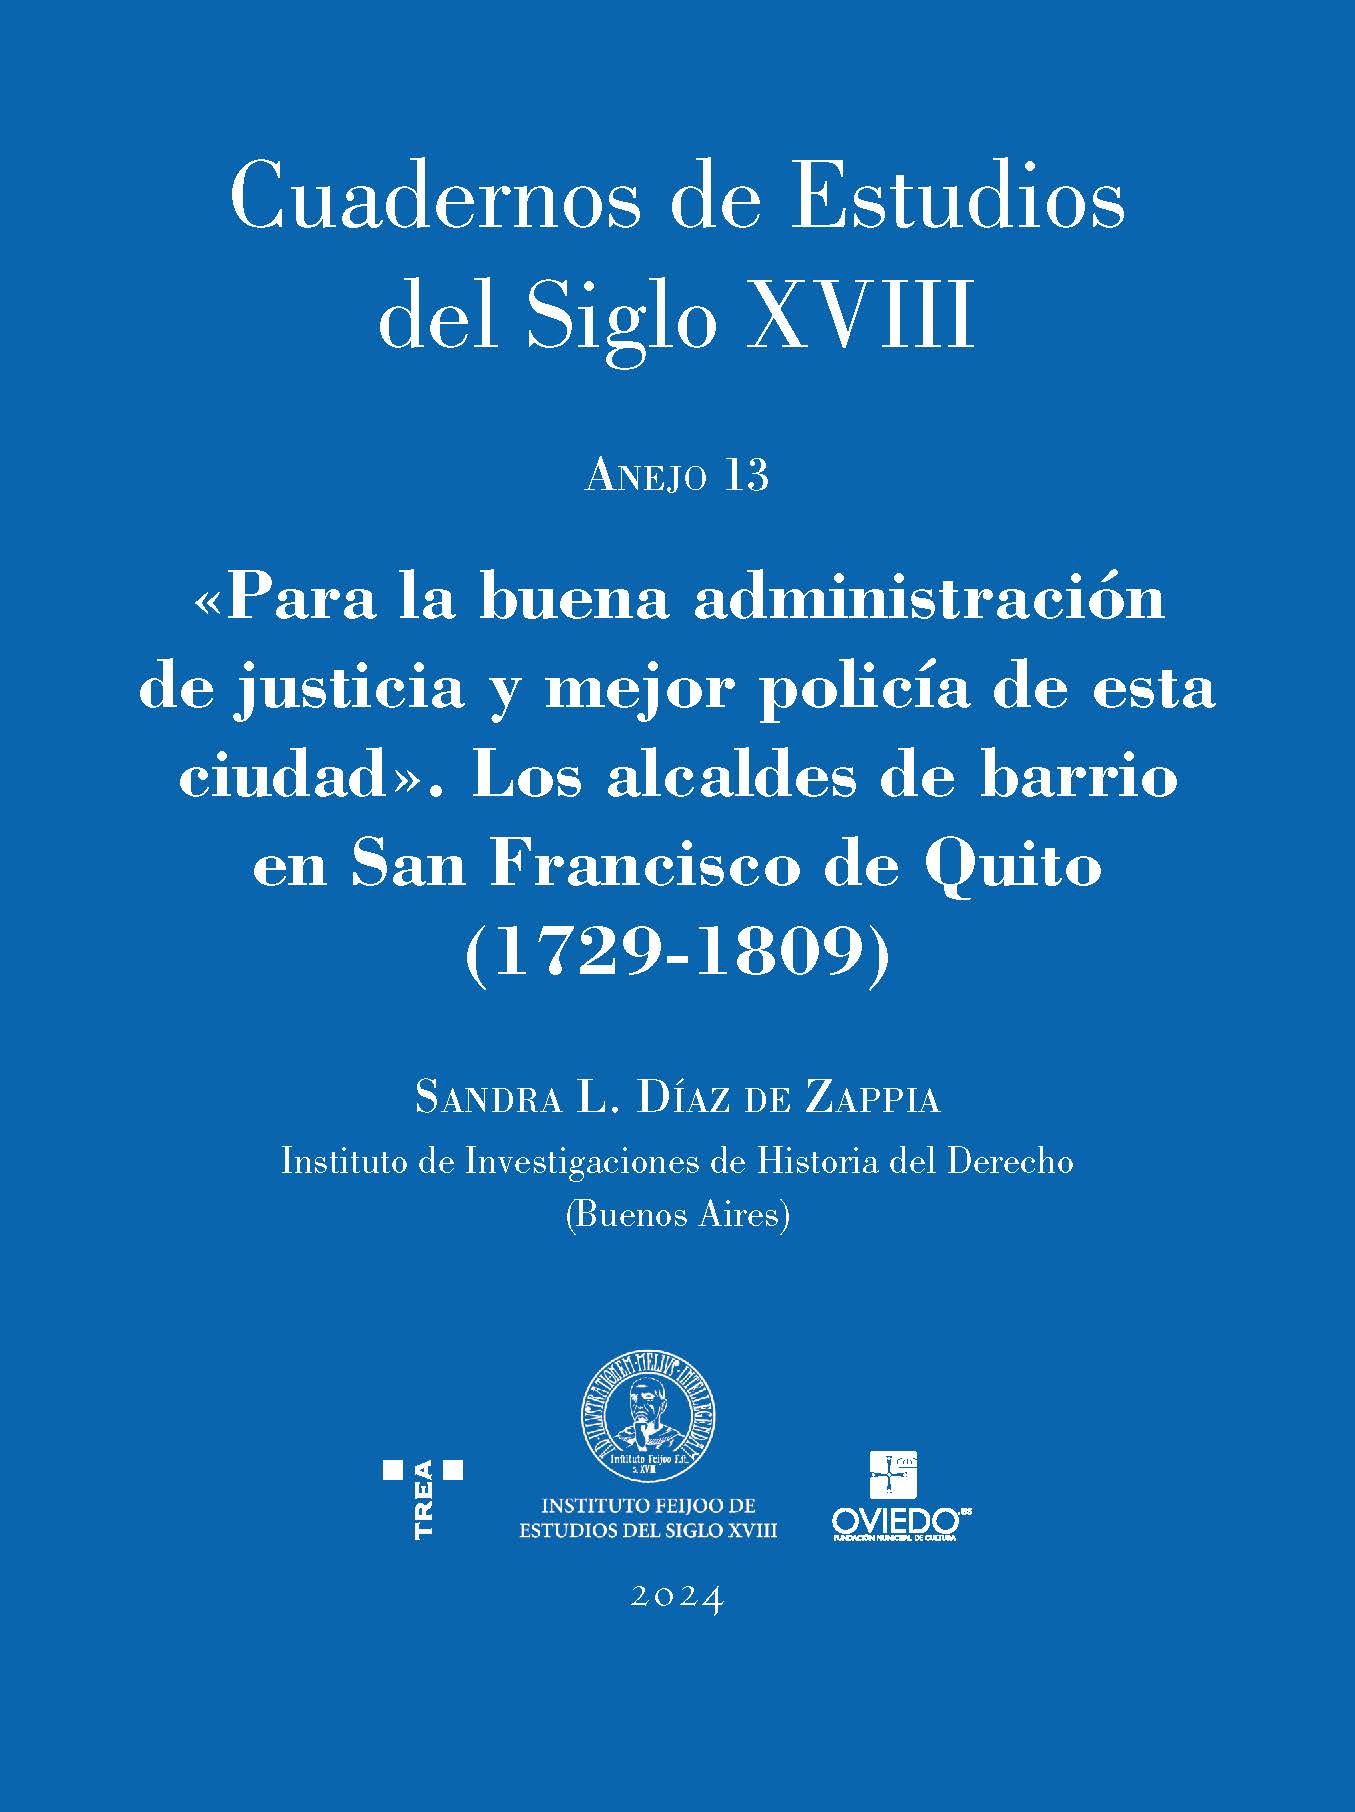 Imagen de portada del libro «Para la buena administración de justicia y mejor policía de esta ciudad»